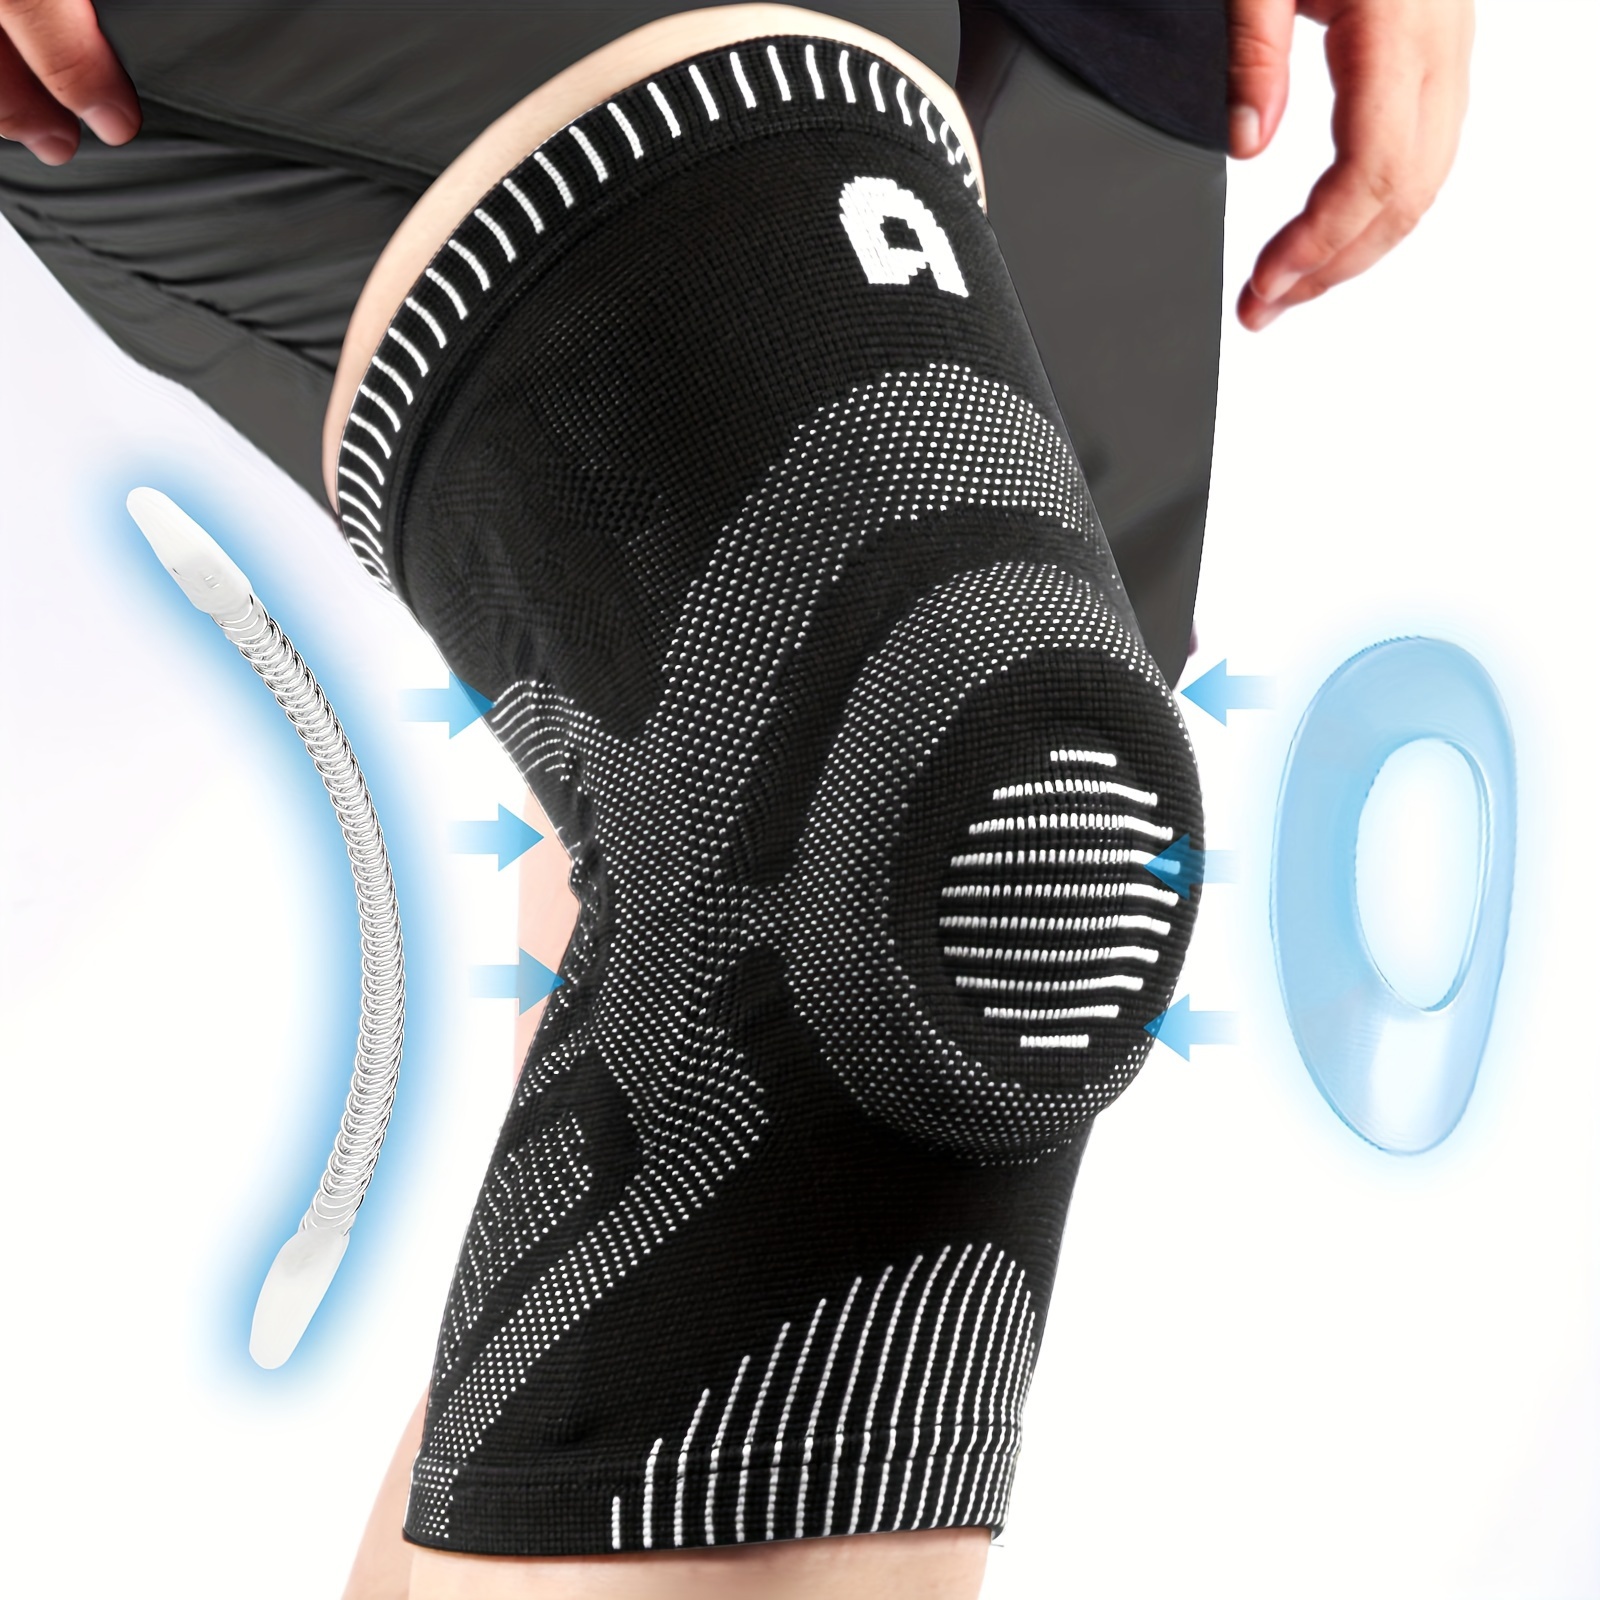 AOLIKES-rodillera de compresión para el gimnasio, rodilleras deportivas  para artritis, menisco y ligamento, 1 piezas